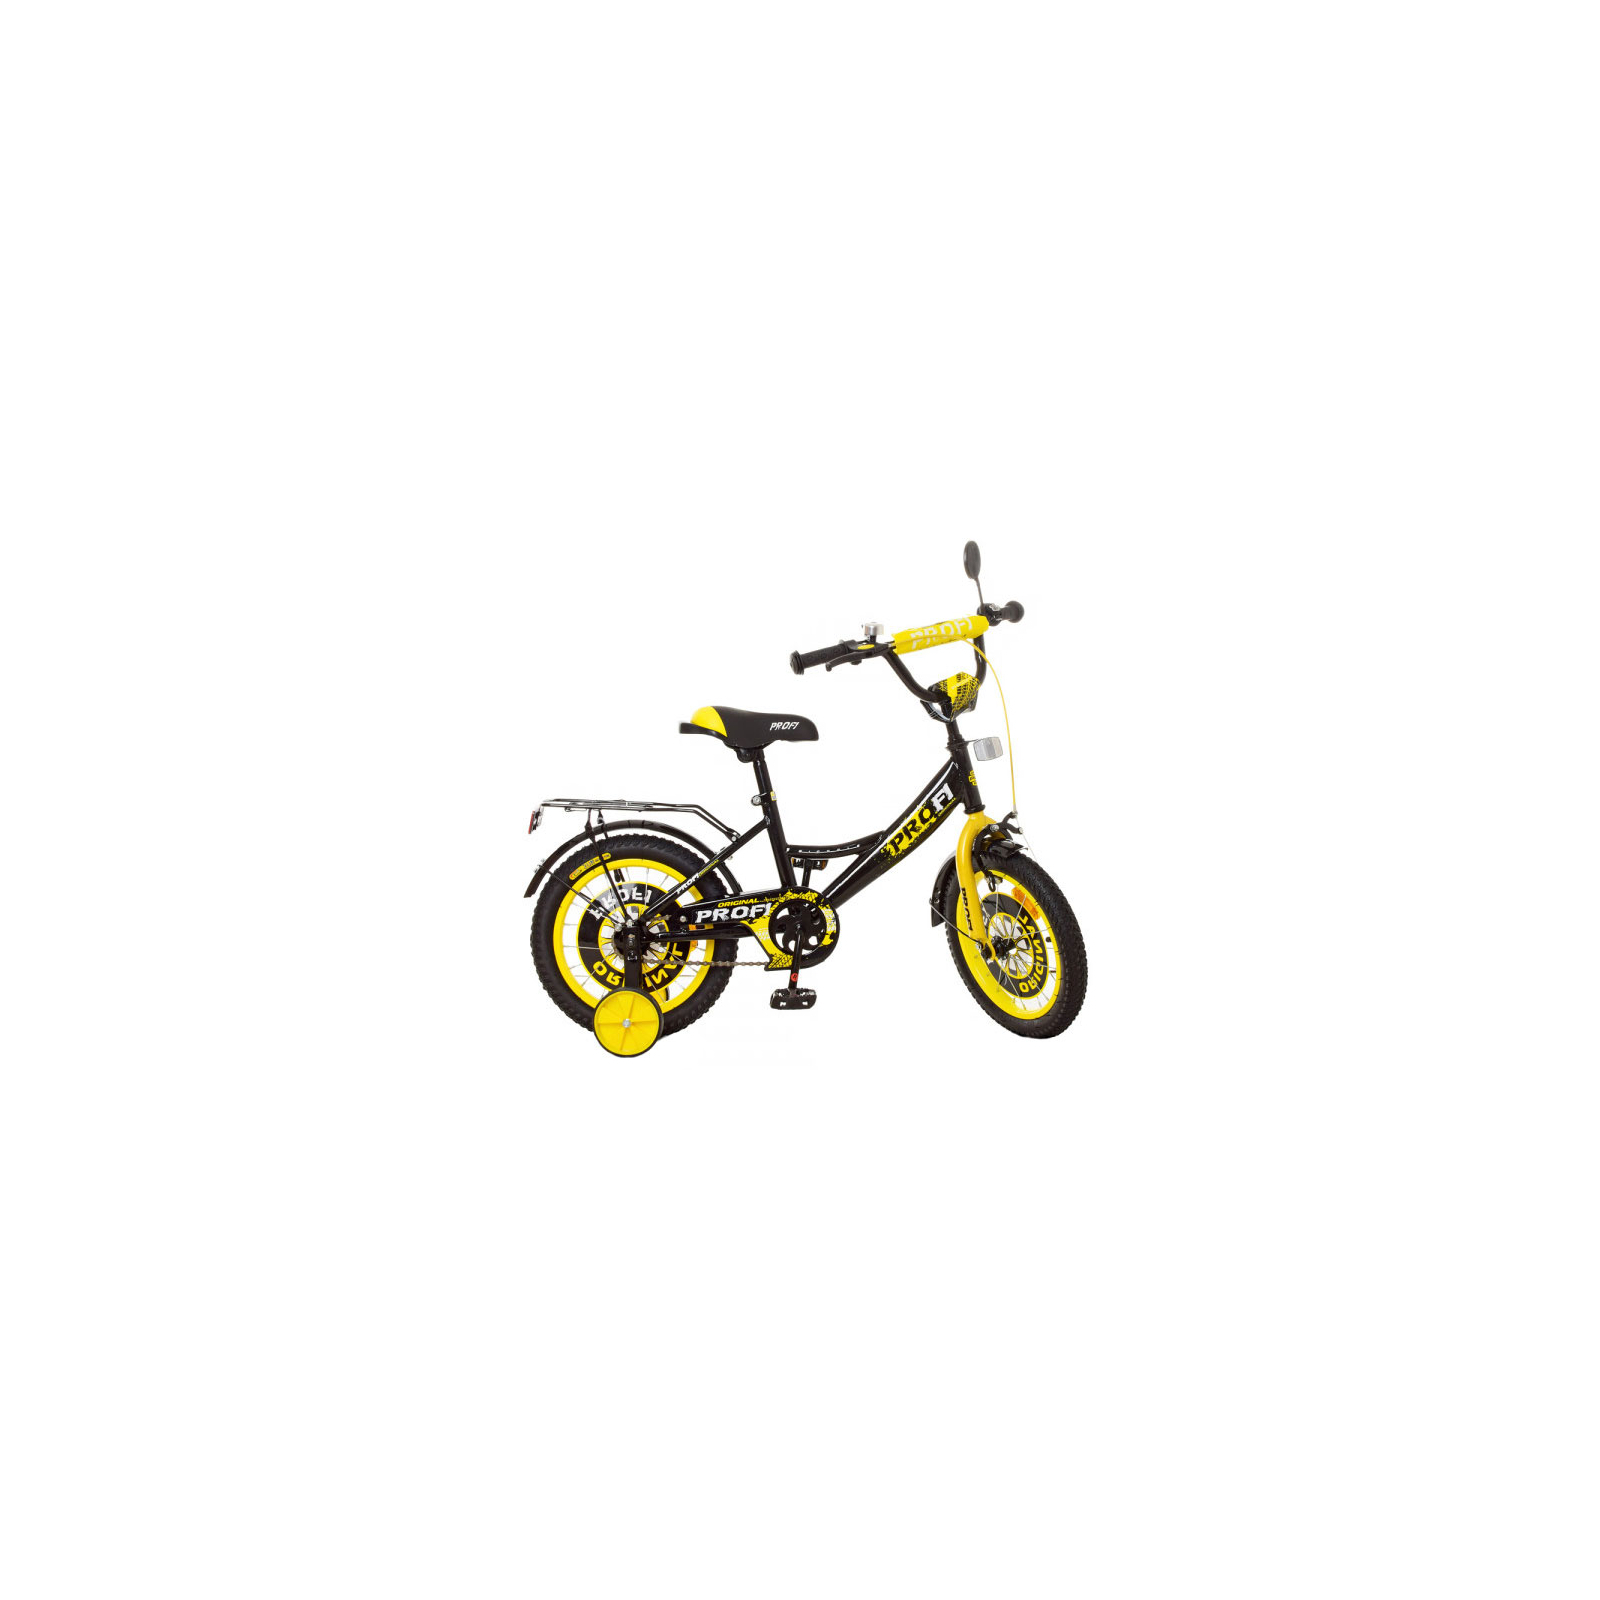 Детский велосипед Profi Original Boy 14" Черно-желтый (XD1443 black/yellow)